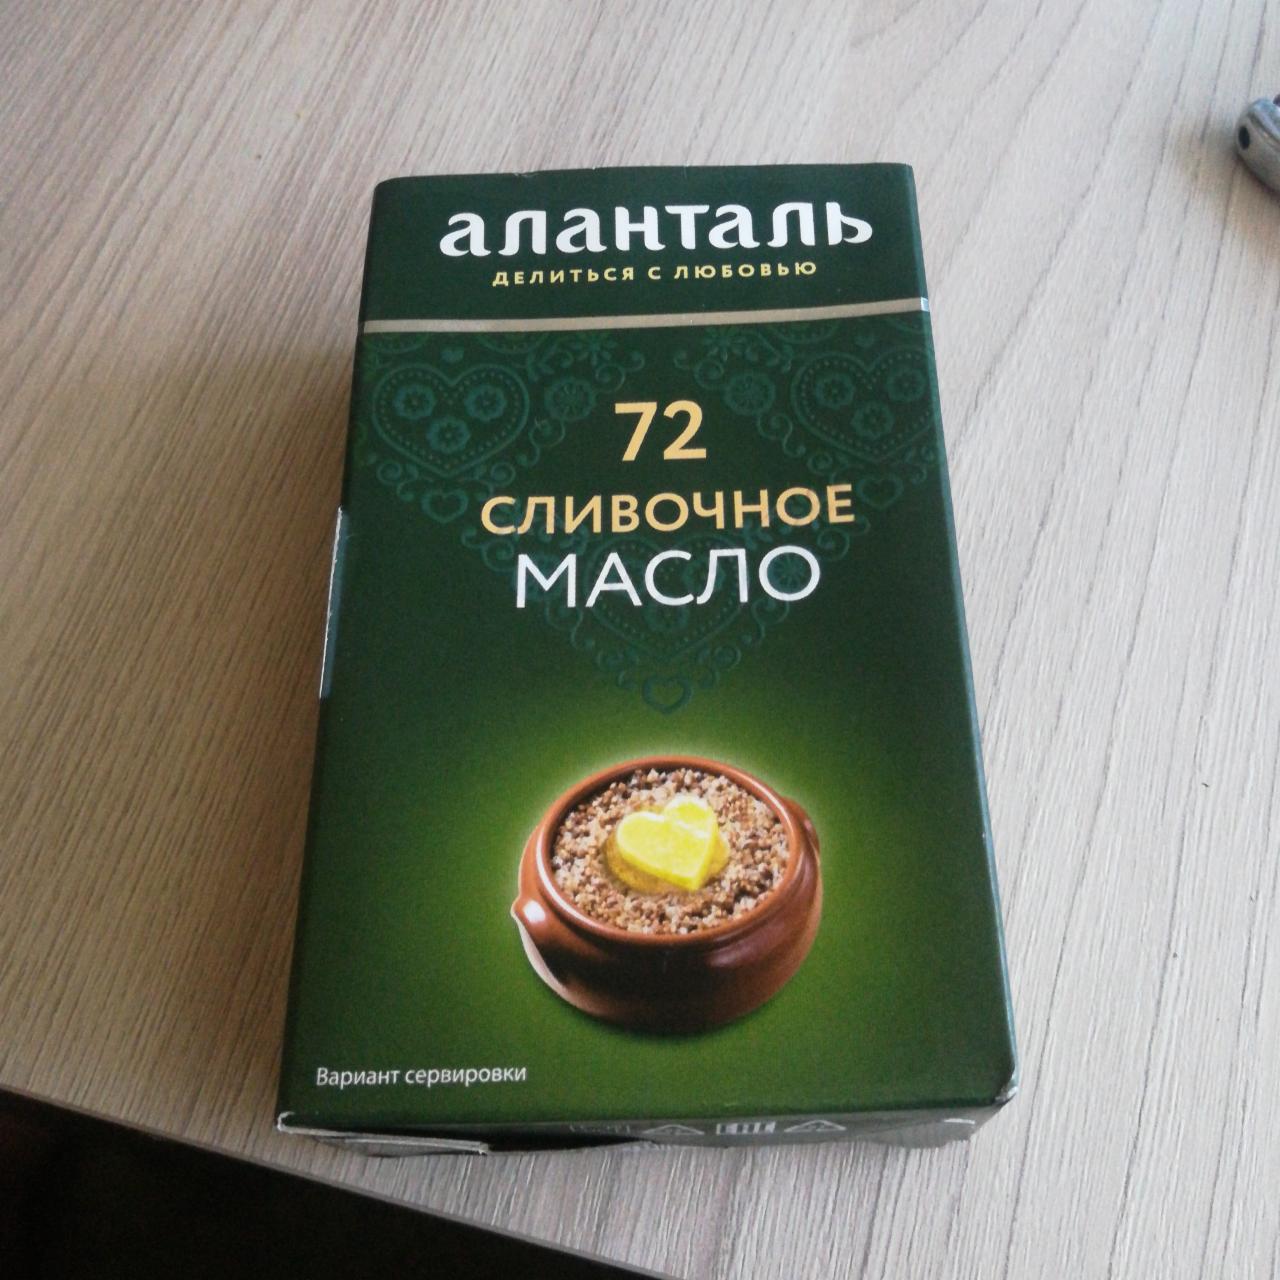 Фото - Масло сливочное крестьянское 72.5% Аланталь